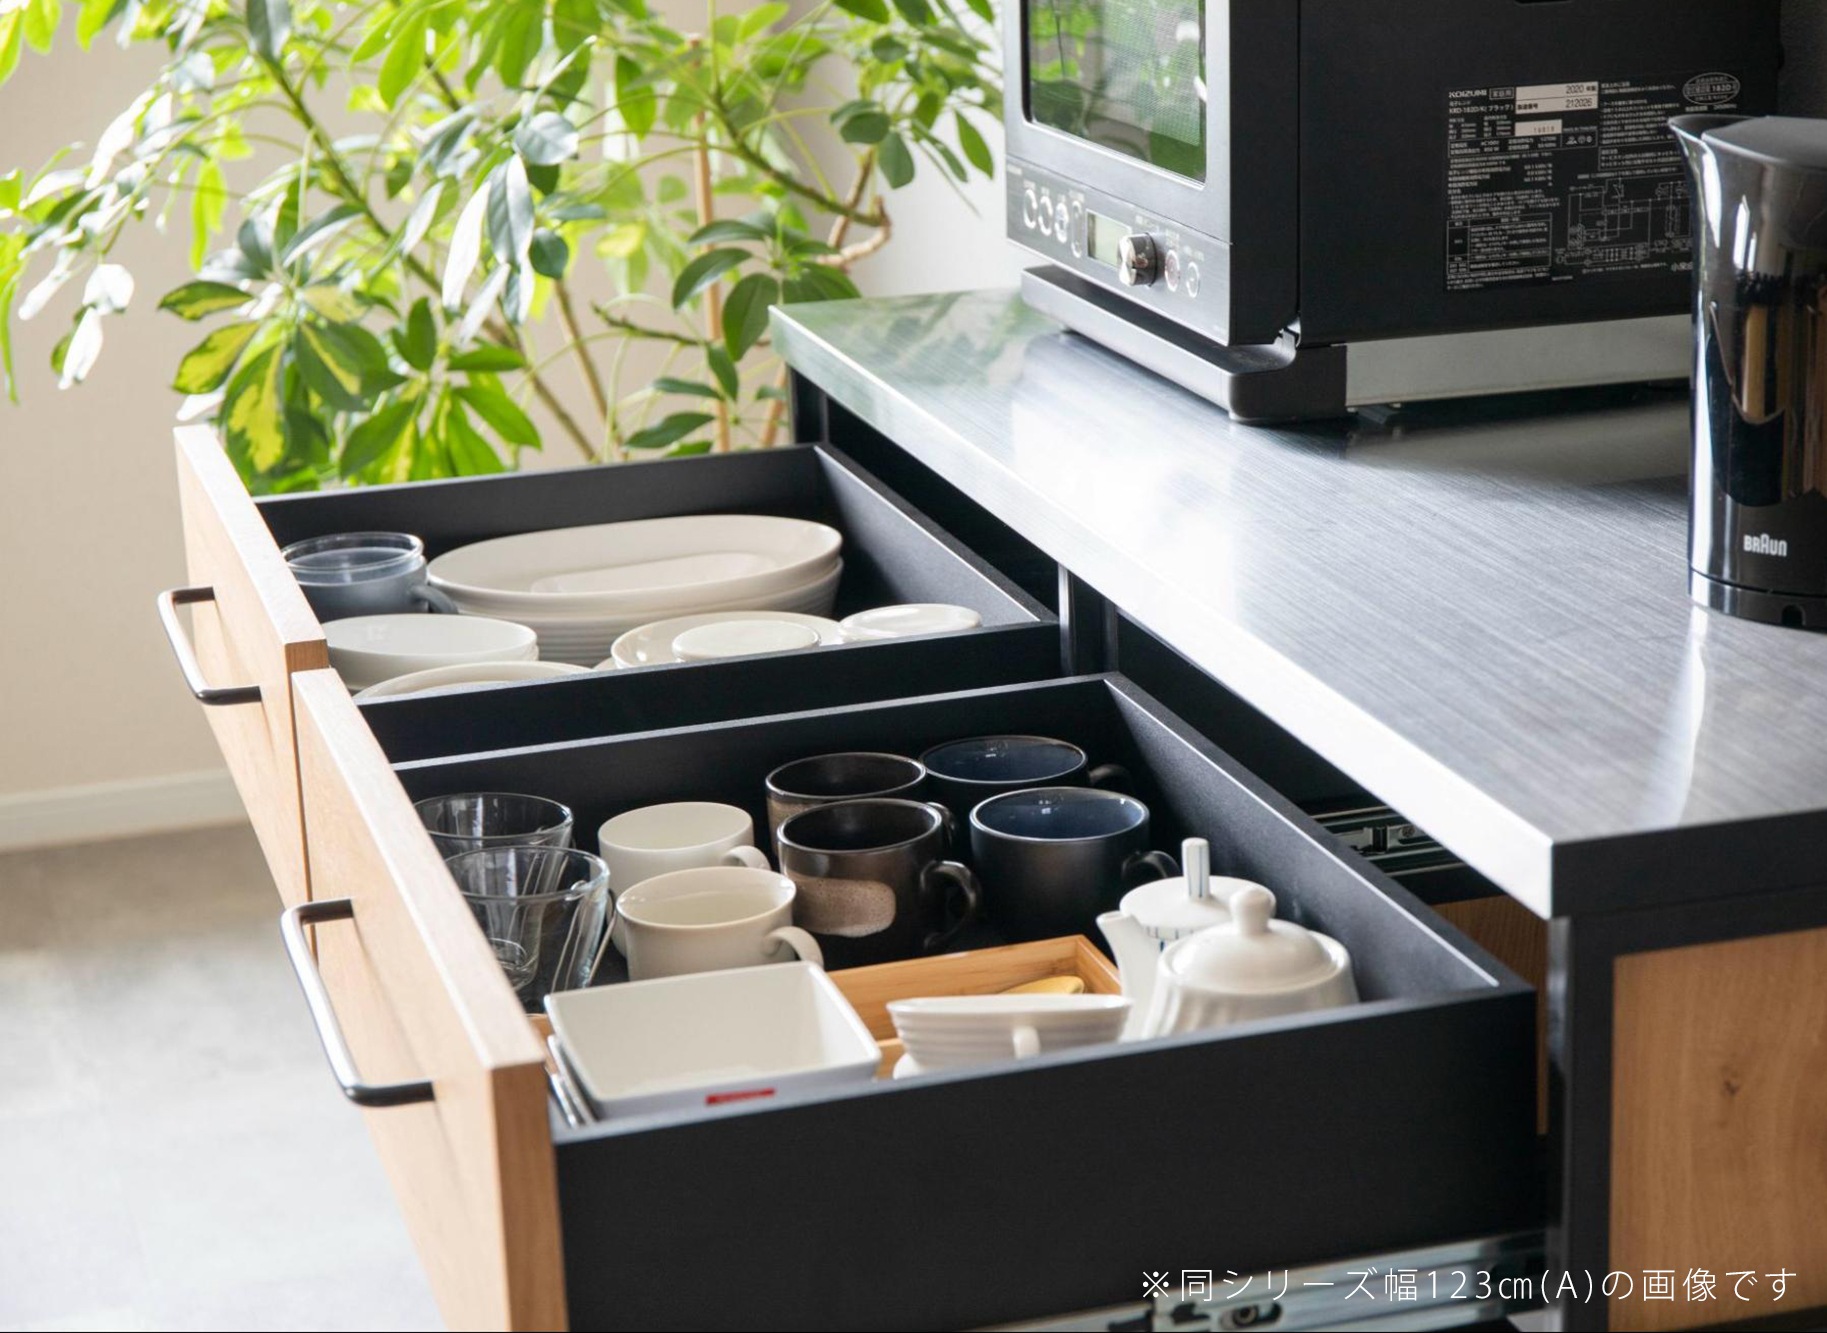 ゴミ箱収納もできるキッチンカウンター。カフェのようなおしゃれなデザイン